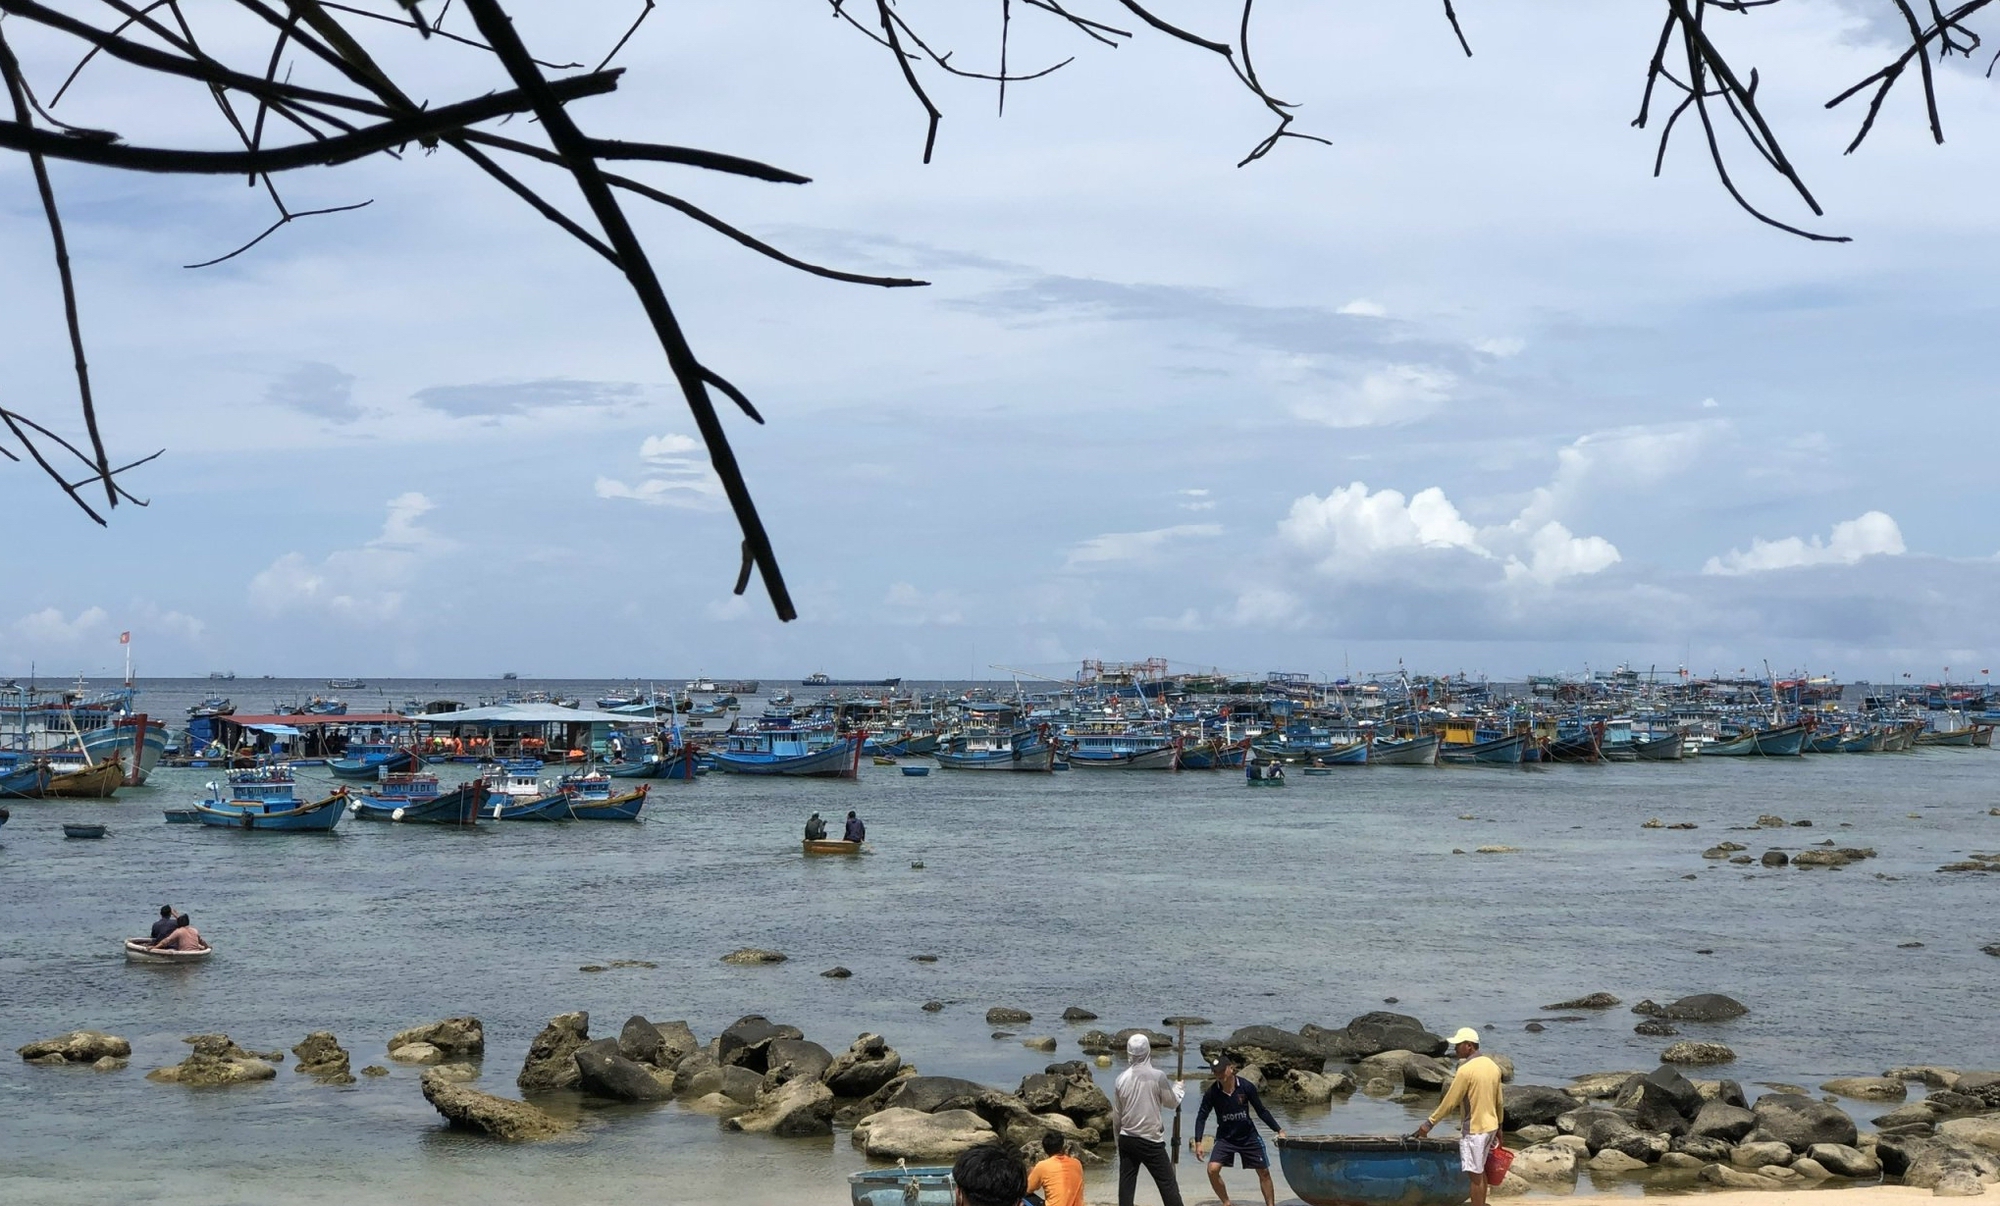 Thanh tra Ủy ban Châu Âu sẽ kiểm tra chống khai thác hải sản bất hợp pháp ở Bình Thuận - Ảnh 4.